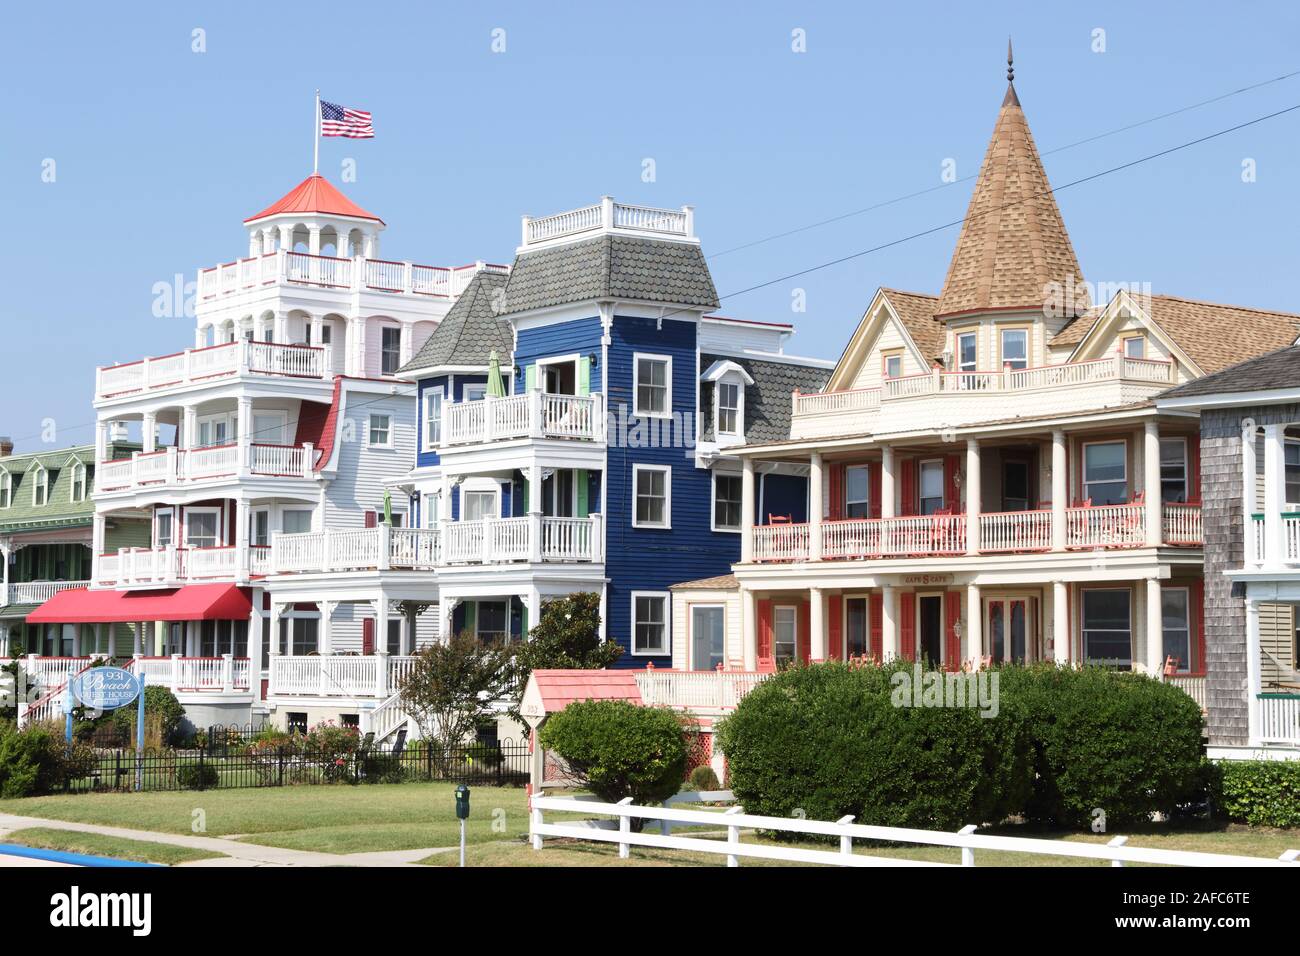 Beispiele der Architektur in Cape May, New Jersey. Ein Kurort vor allem für die Viktorianische thematische Strukturen bekannt Stockfoto